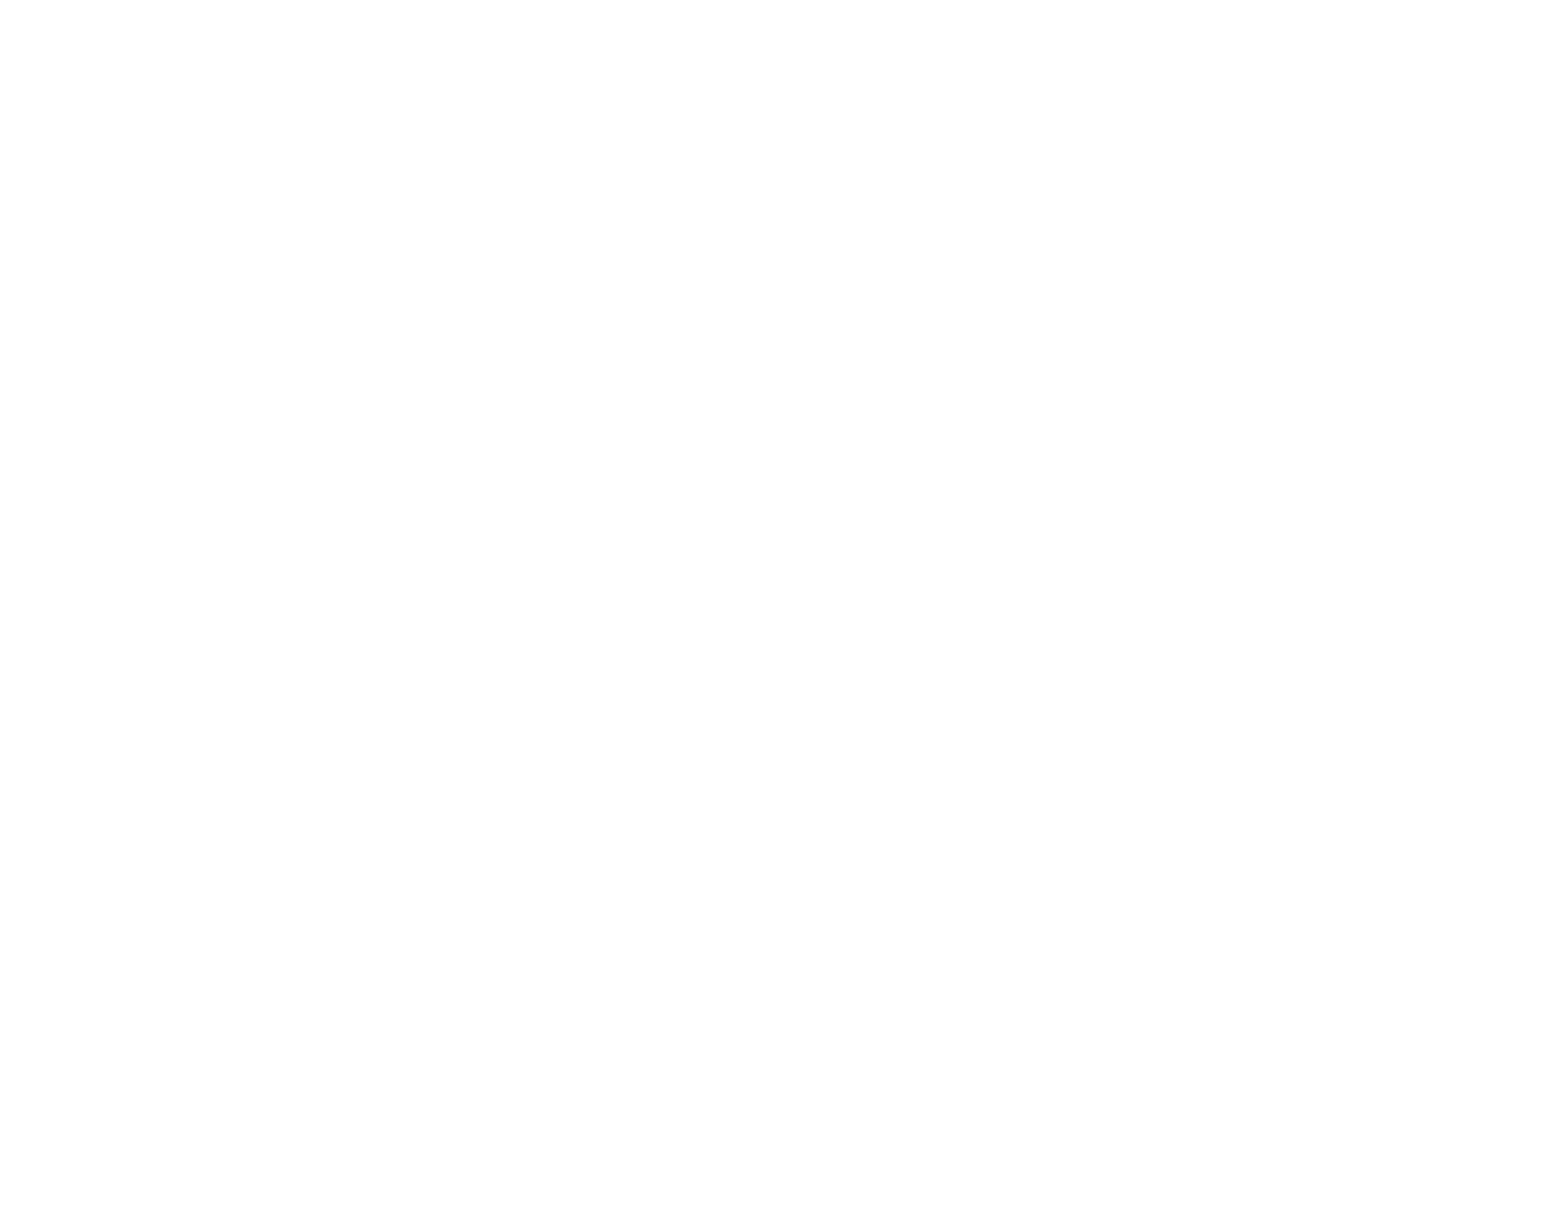 Genus logo large for dark backgrounds (transparent PNG)